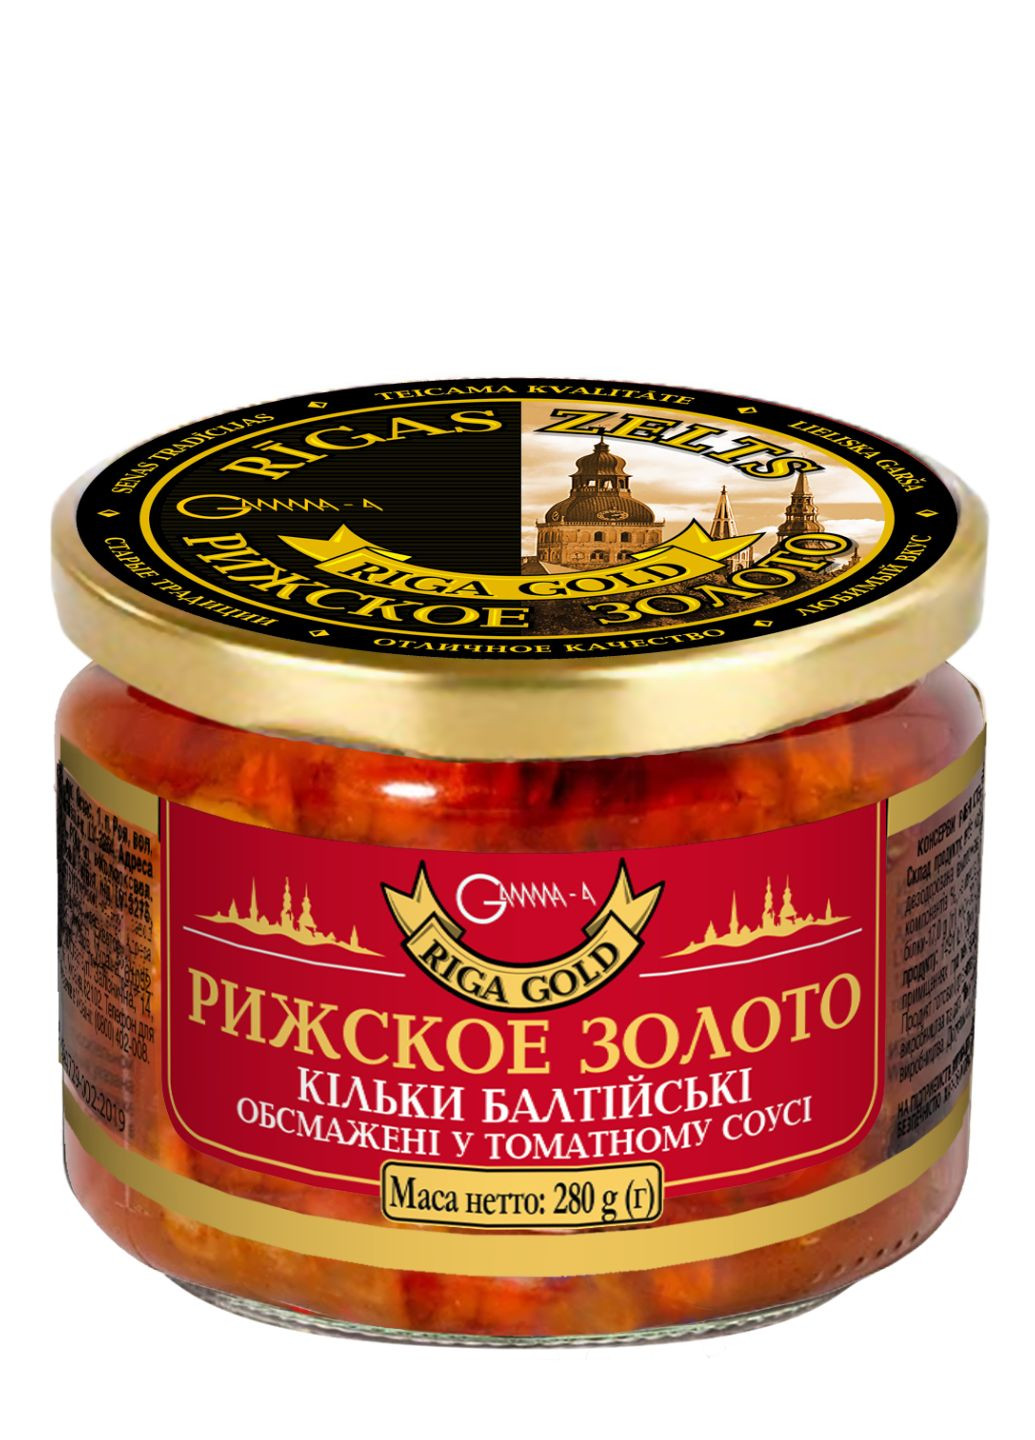 Кільки балтійські обсмажені в томатному соусі Ризьке золото 280 г Ризьке Золото - (258691808)